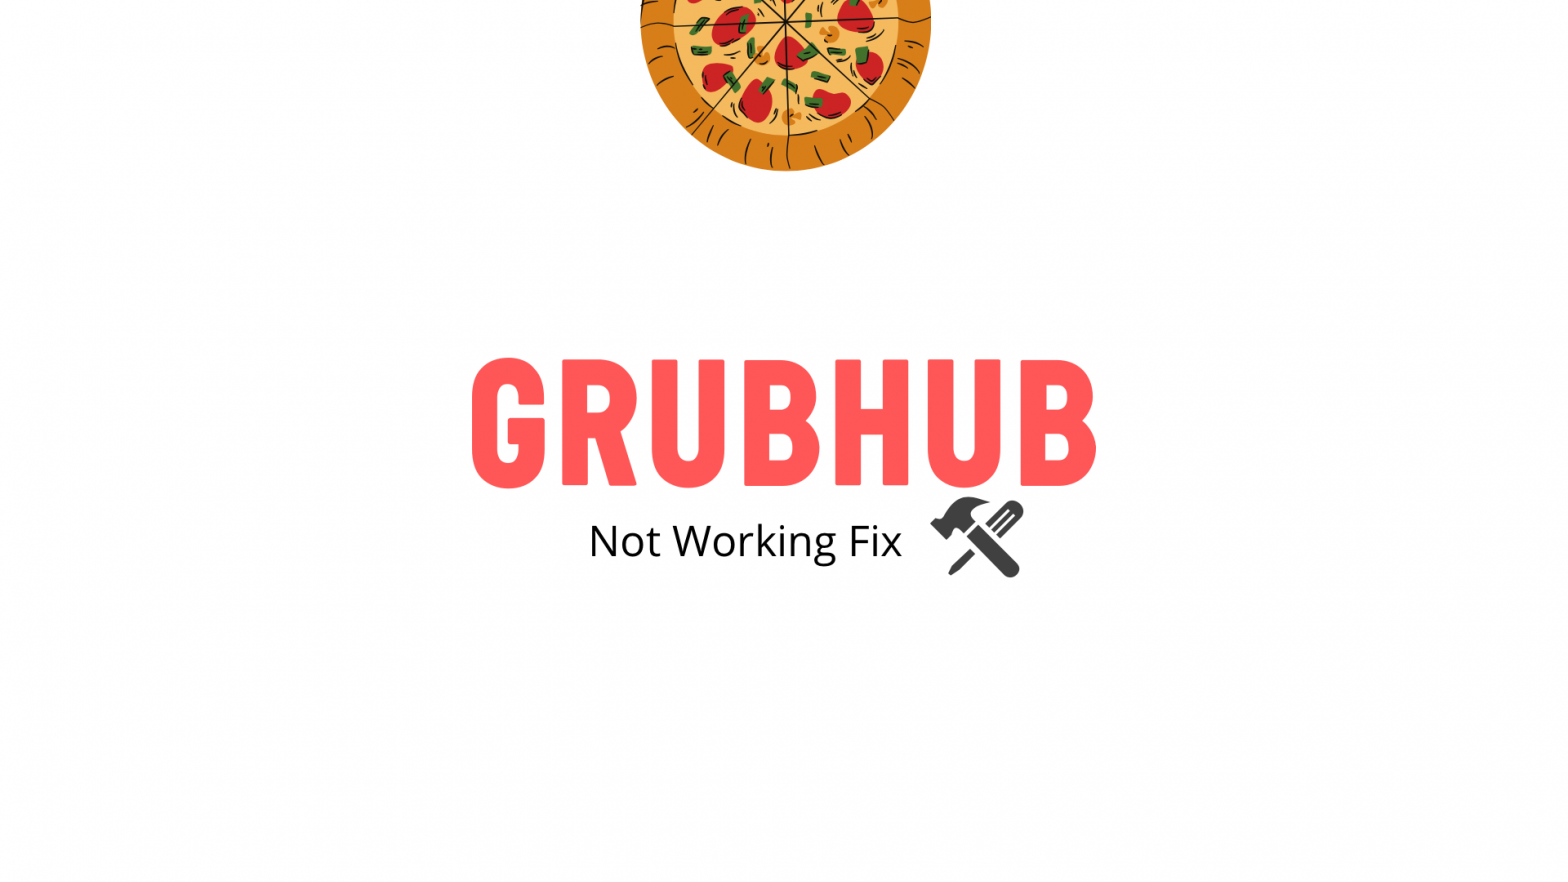 Grubhub not working